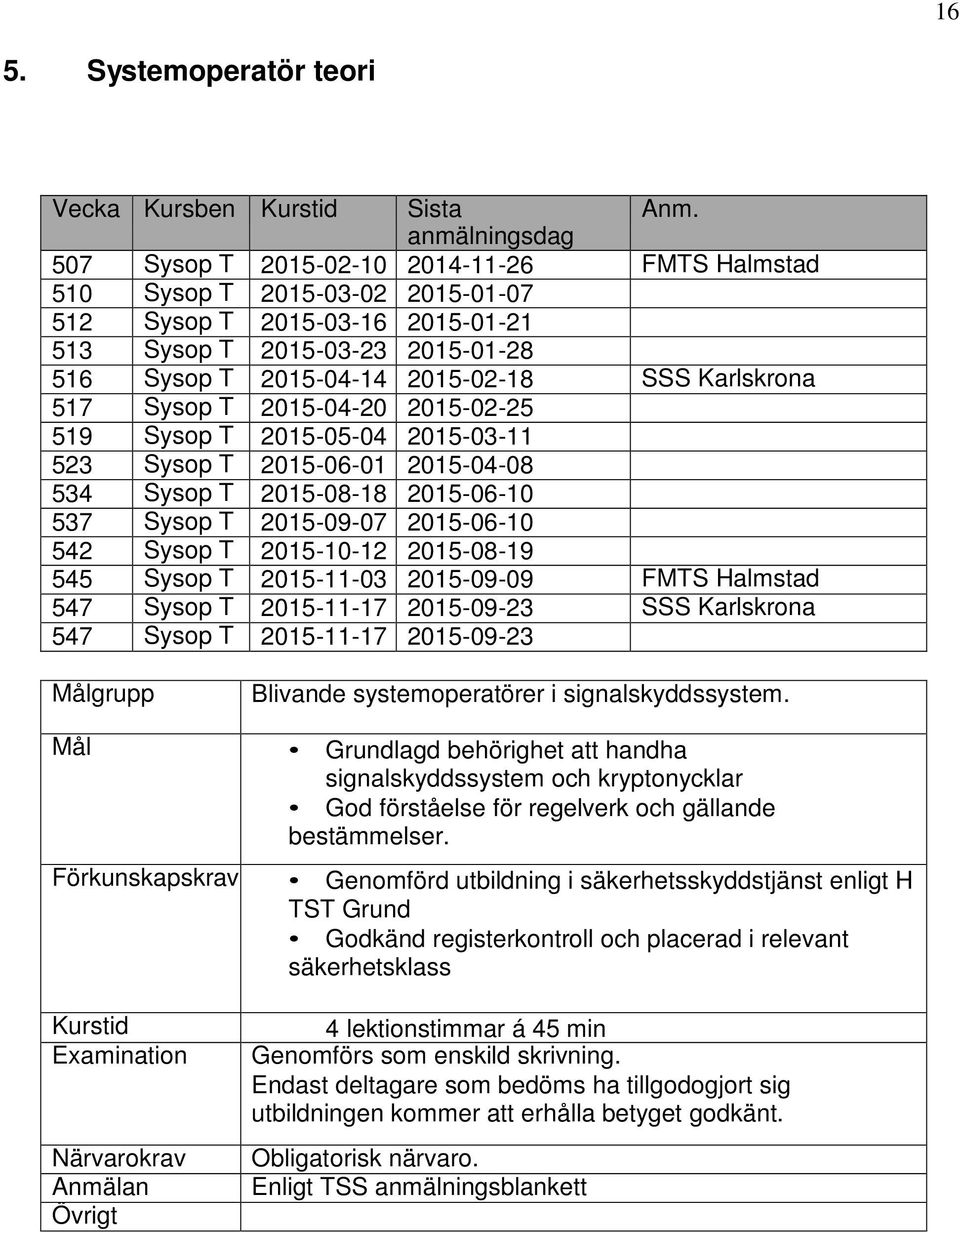 Sysop T 2015-10-12 2015-08-19 545 Sysop T 2015-11-03 2015-09-09 FMTS Halmstad 547 Sysop T 2015-11-17 2015-09-23 SSS Karlskrona 547 Sysop T 2015-11-17 2015-09-23 Blivande systemoperatörer i